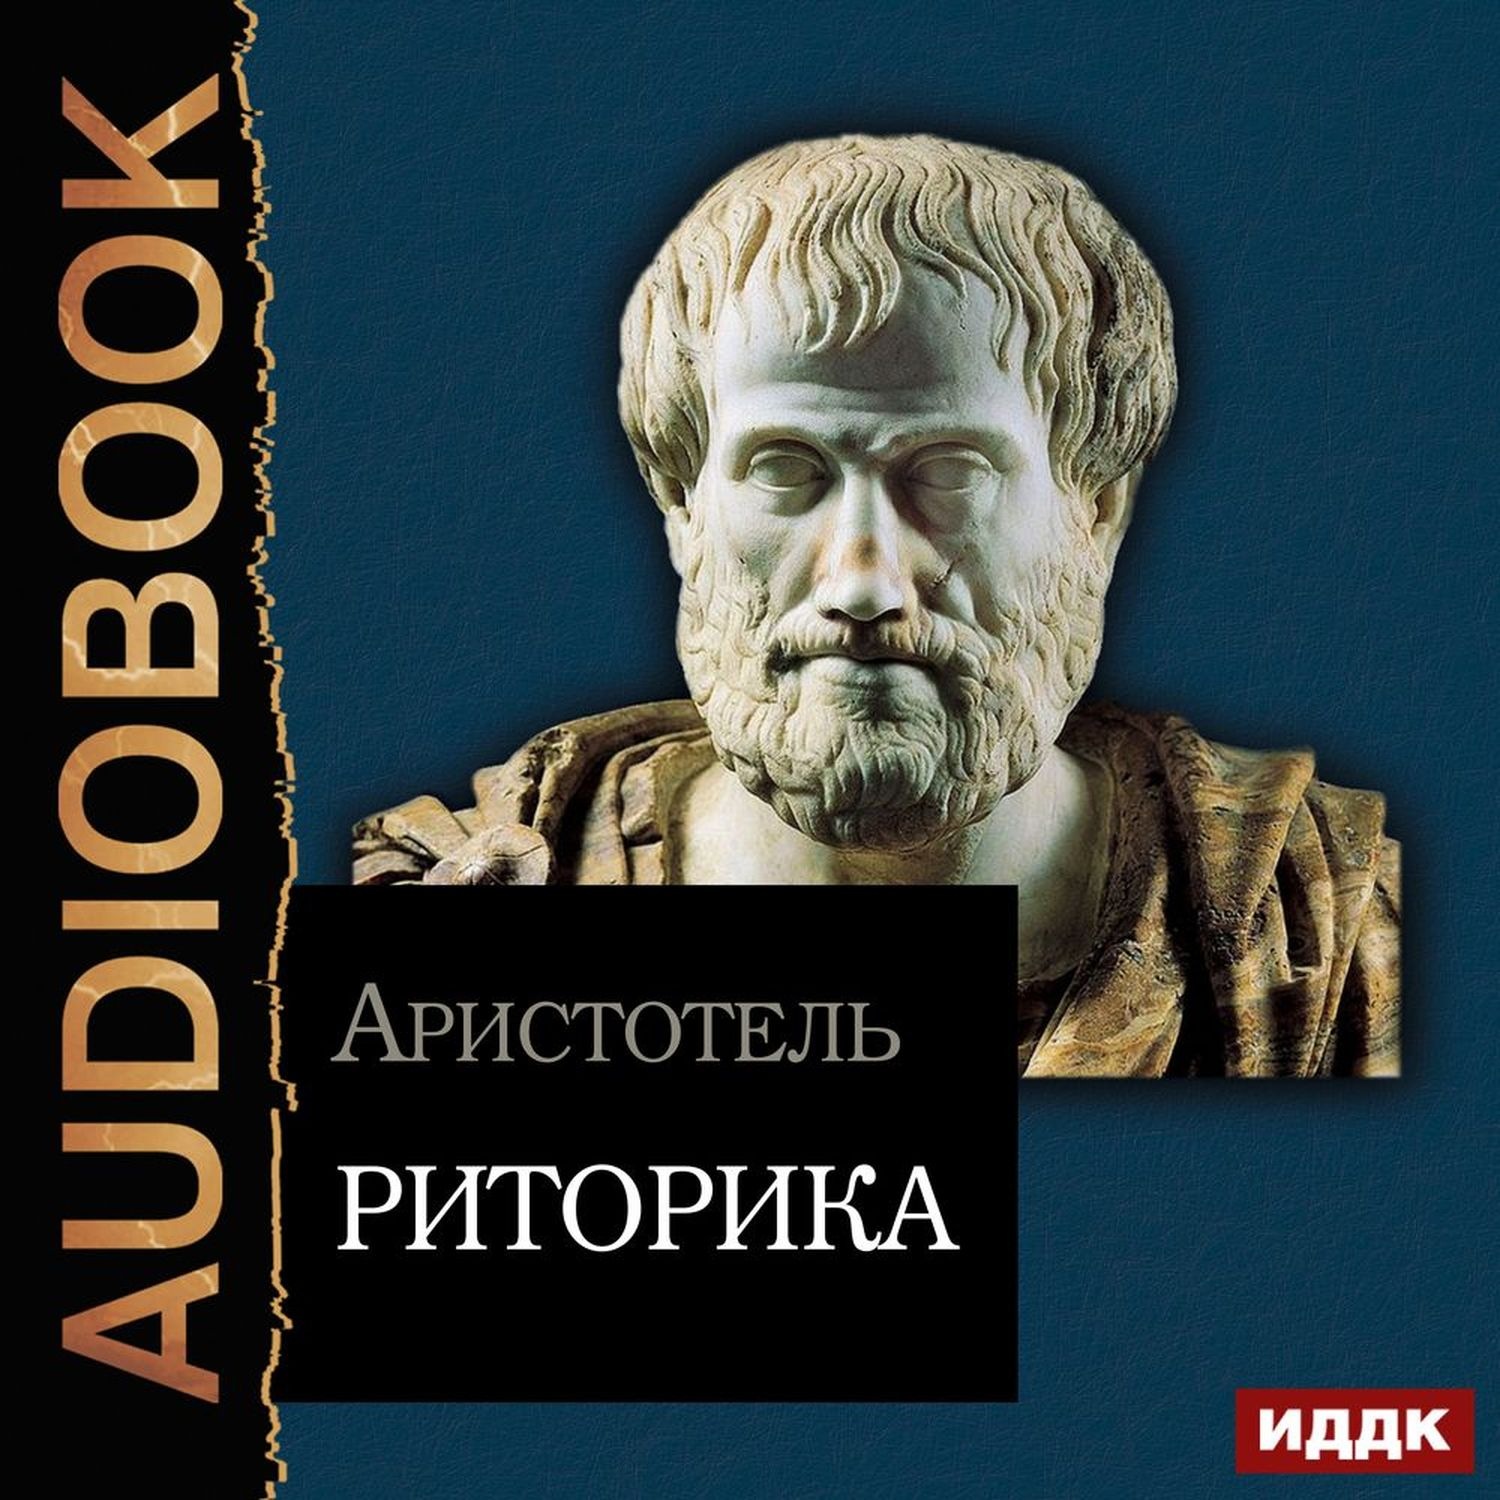 Аристотель книга 1